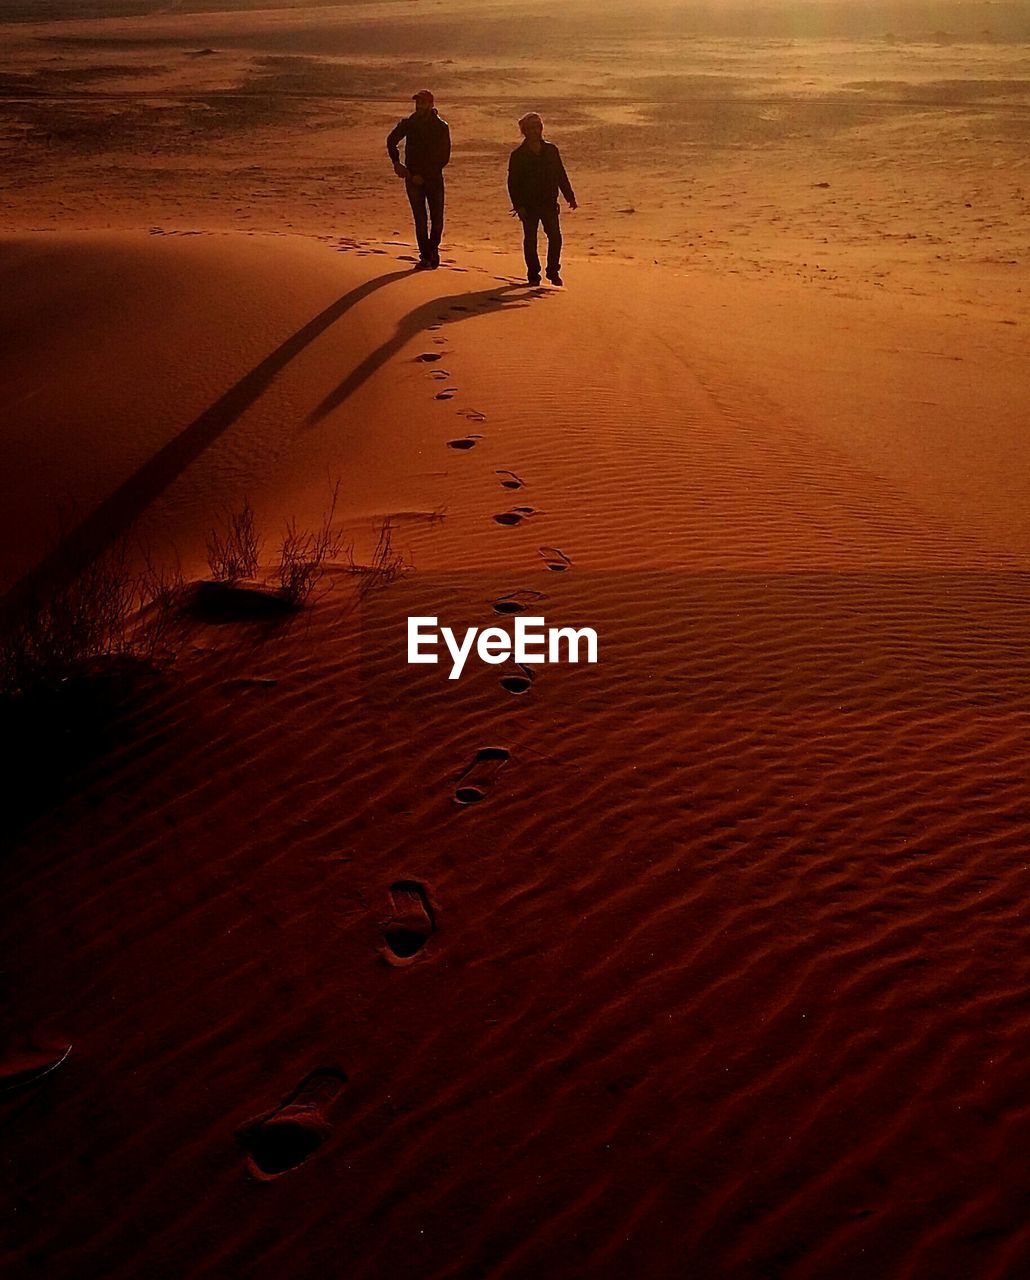 Men walking on sand dune during sunset at wadi rum